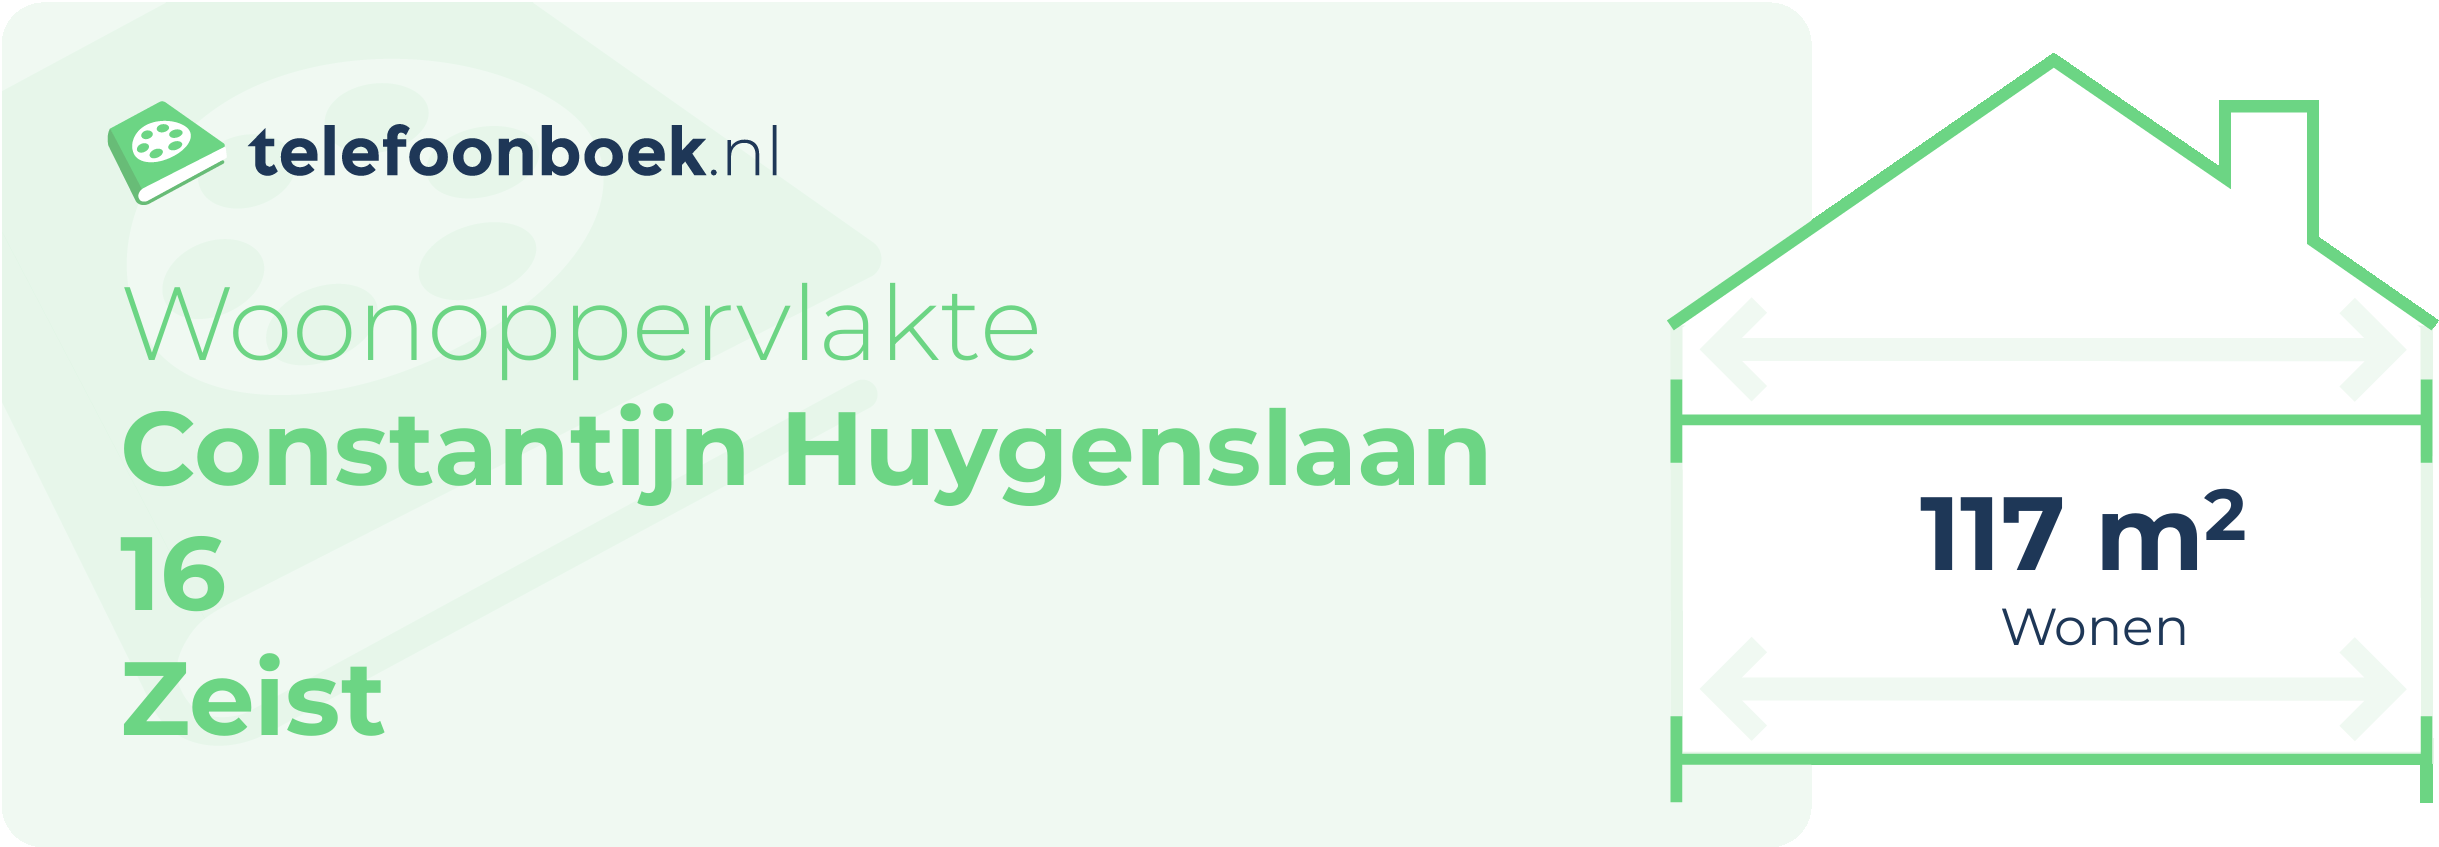 Woonoppervlakte Constantijn Huygenslaan 16 Zeist